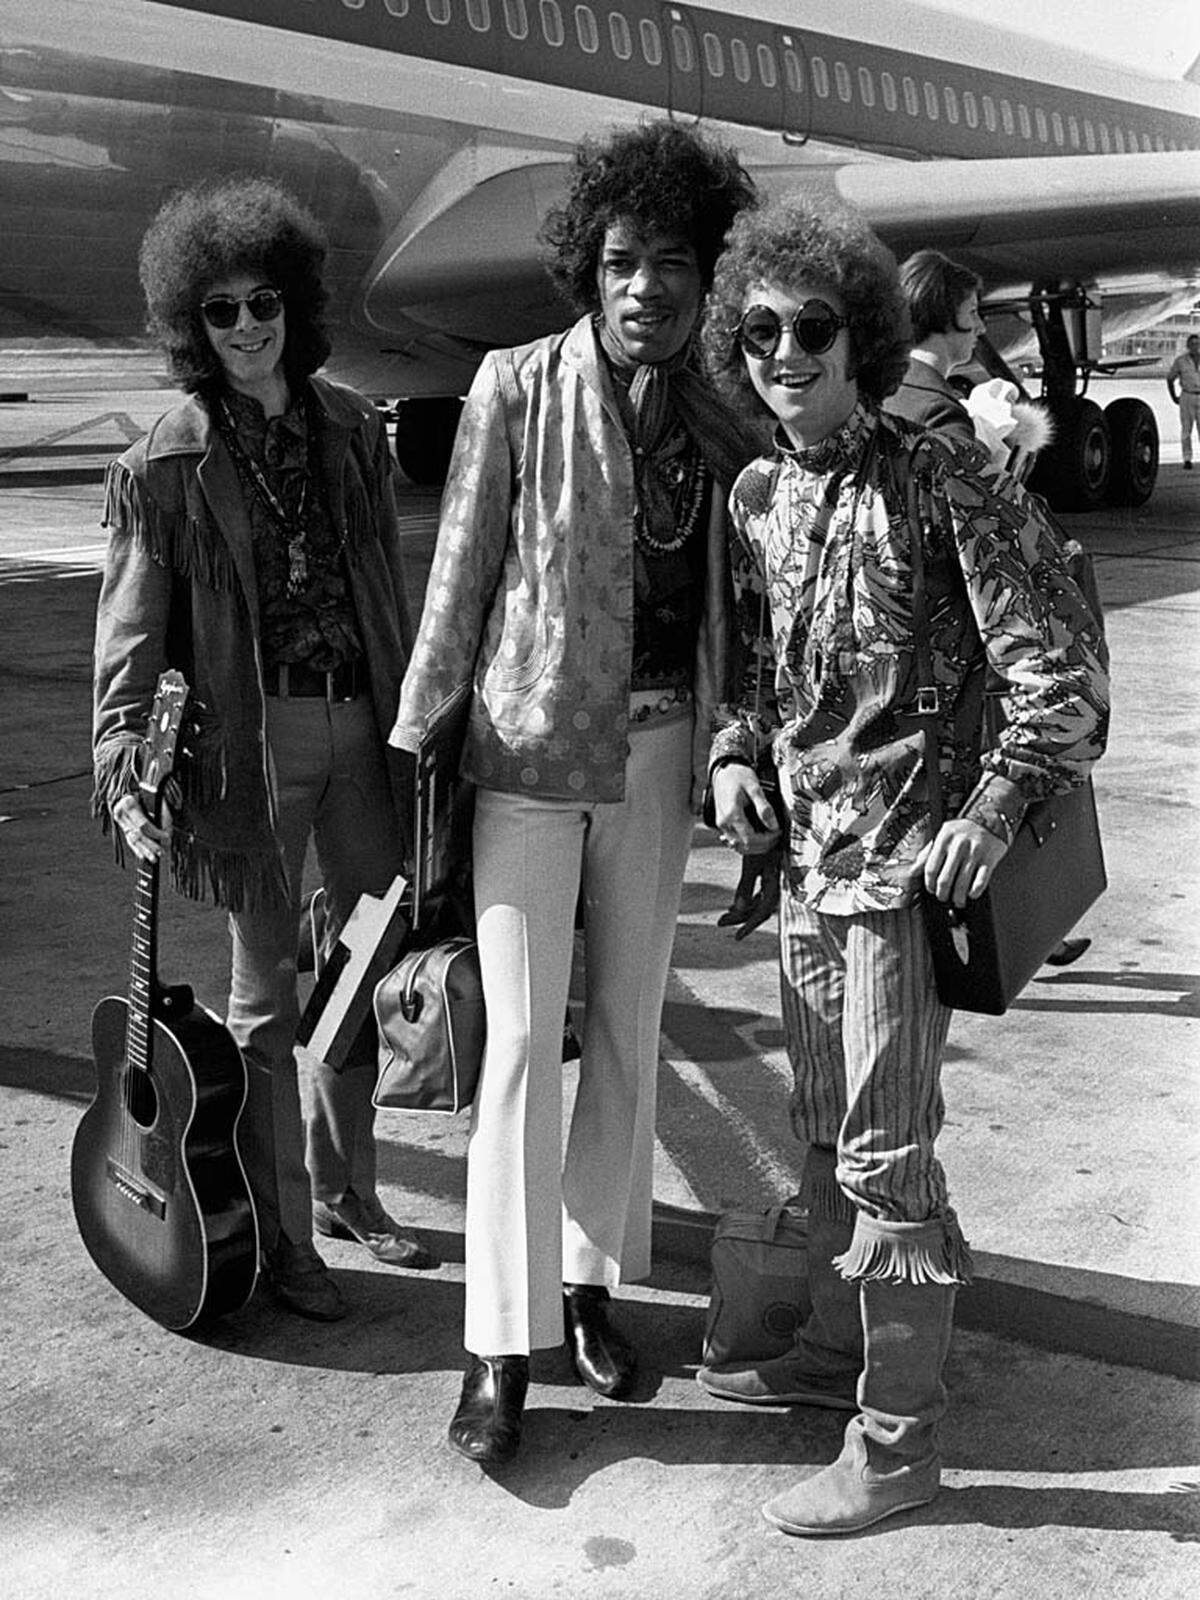 Zusammen mit dem Bassisten Noel Redding und dem Schlagzeuger Mitch Mitchell entstand das Trio The Jimi Hendrix Experience. Schon das Debütalbum "Are You Experienced?" von 1967 brachte den Durchbruch. Im Bild: Jimi Hendrix (Mitte) mit Noel Redding (likns) und Mitch Mitchell (rechts). Redding starb 2003, Mitchell 2008